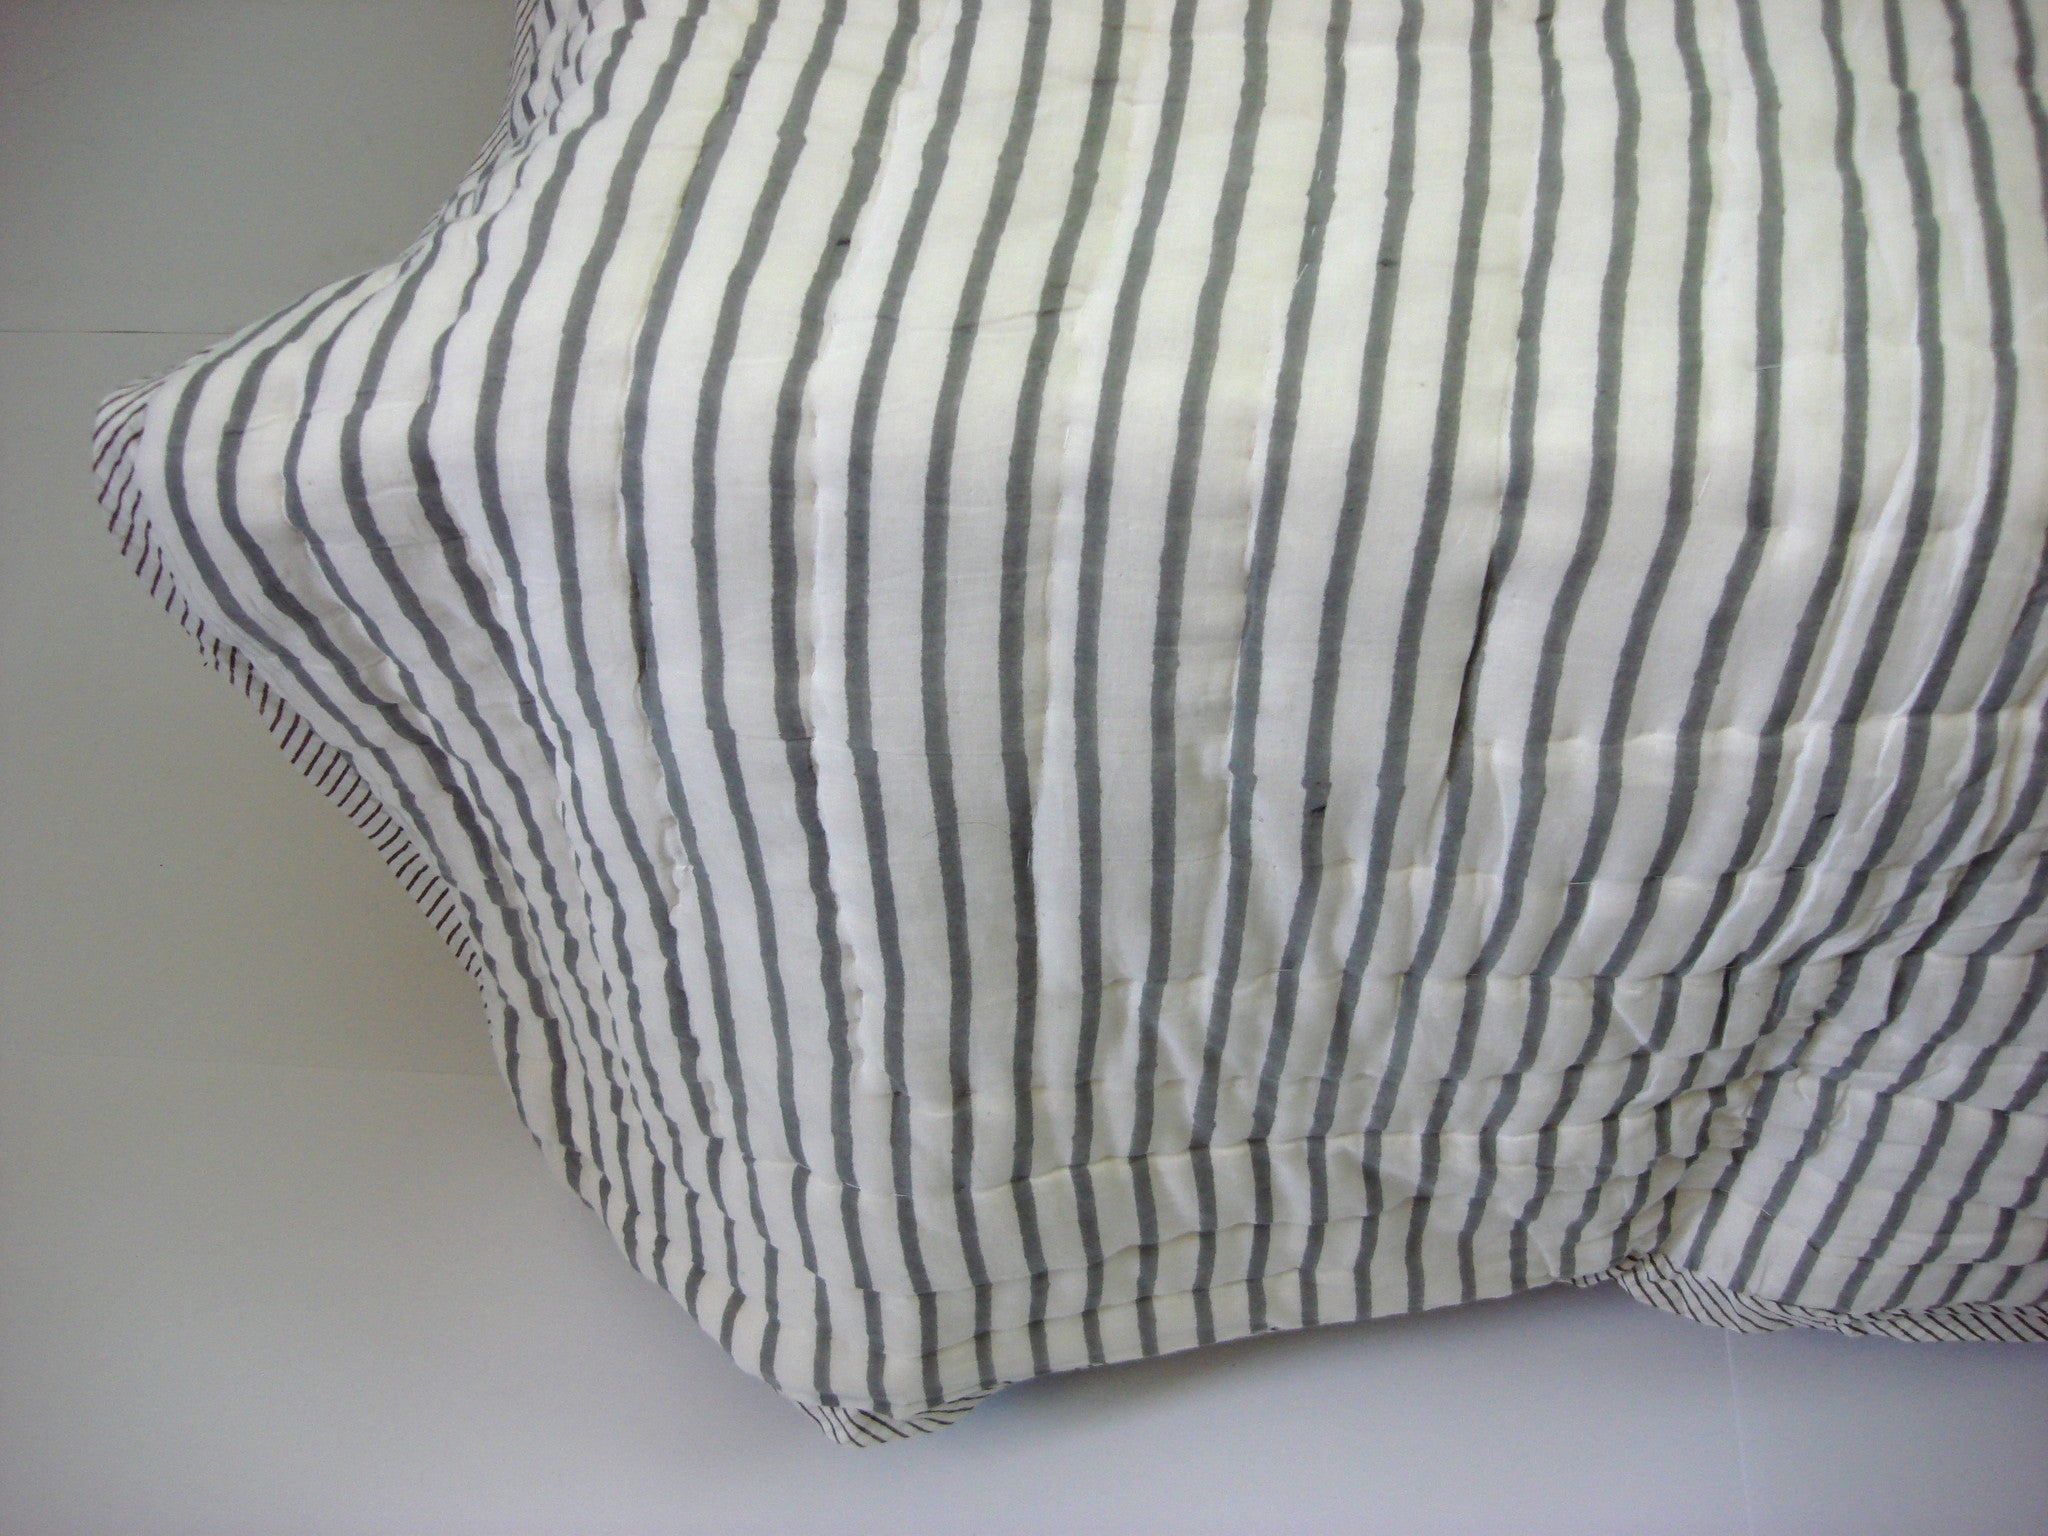 100% Handmade Cotton Patchwork Dark Quilt - Pentagon Crafts